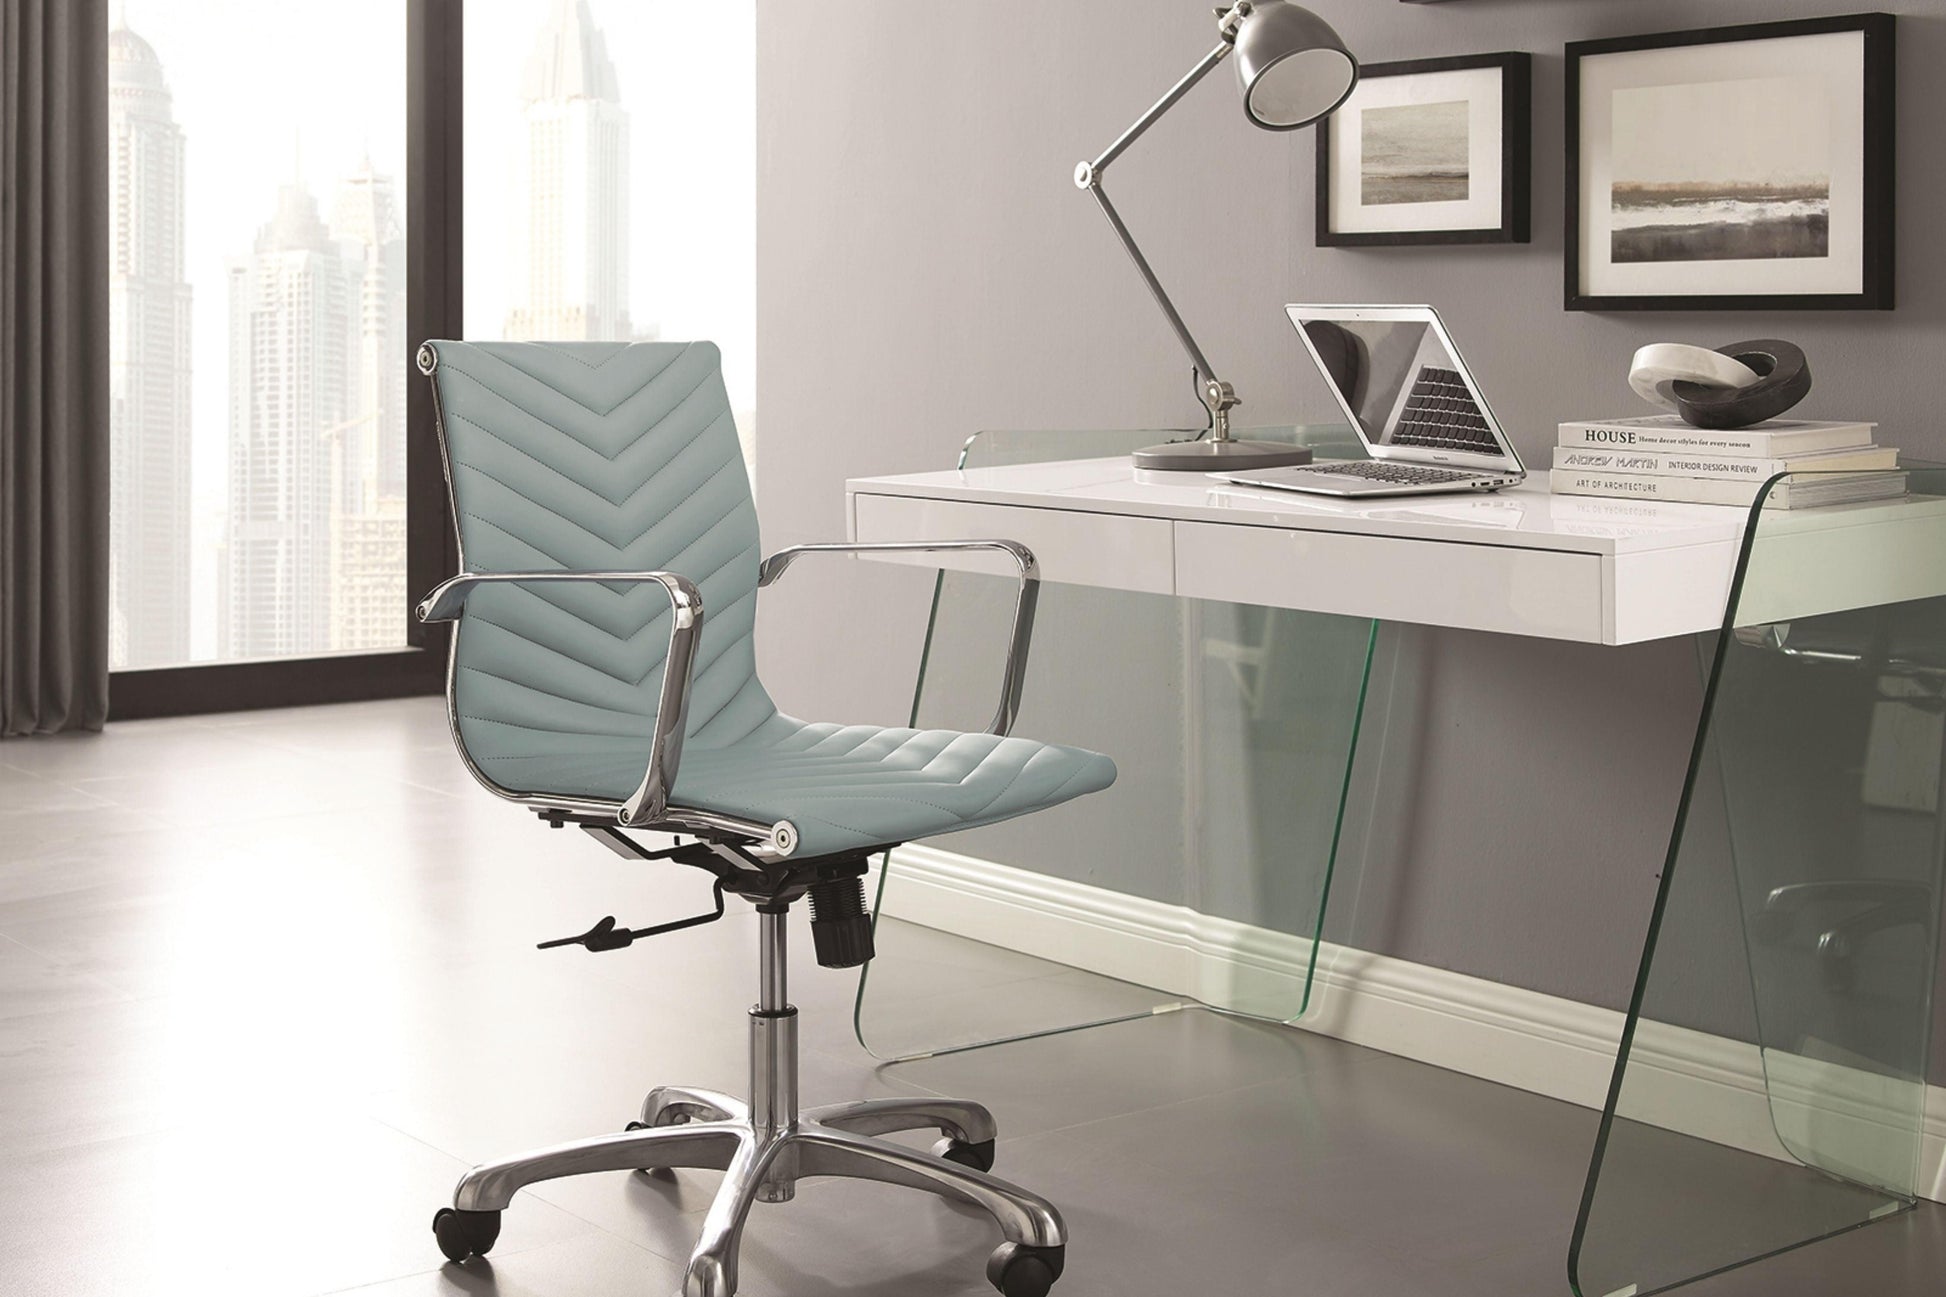 Archie Office Desk Walnut and White Model CB-786GR - Venini Furniture 